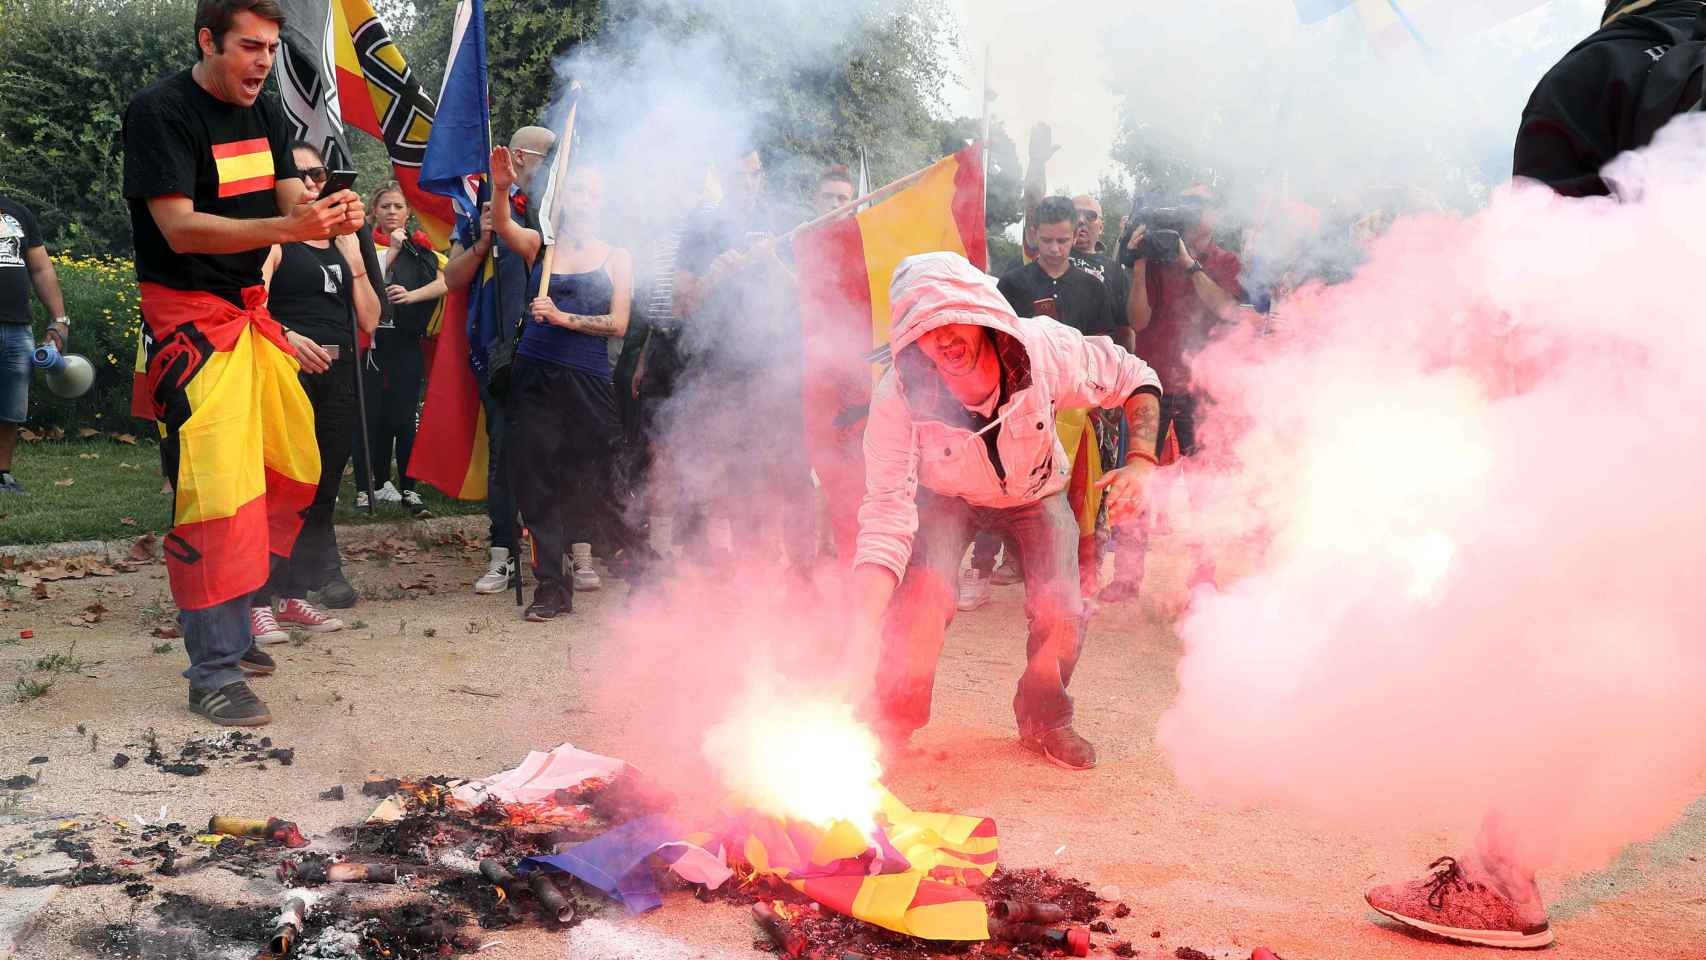 Colectivos de ultraderecha portan banderas preconstitucionales mientras queman banderas esteladas y propaganda independentista EFE/Toni Albir